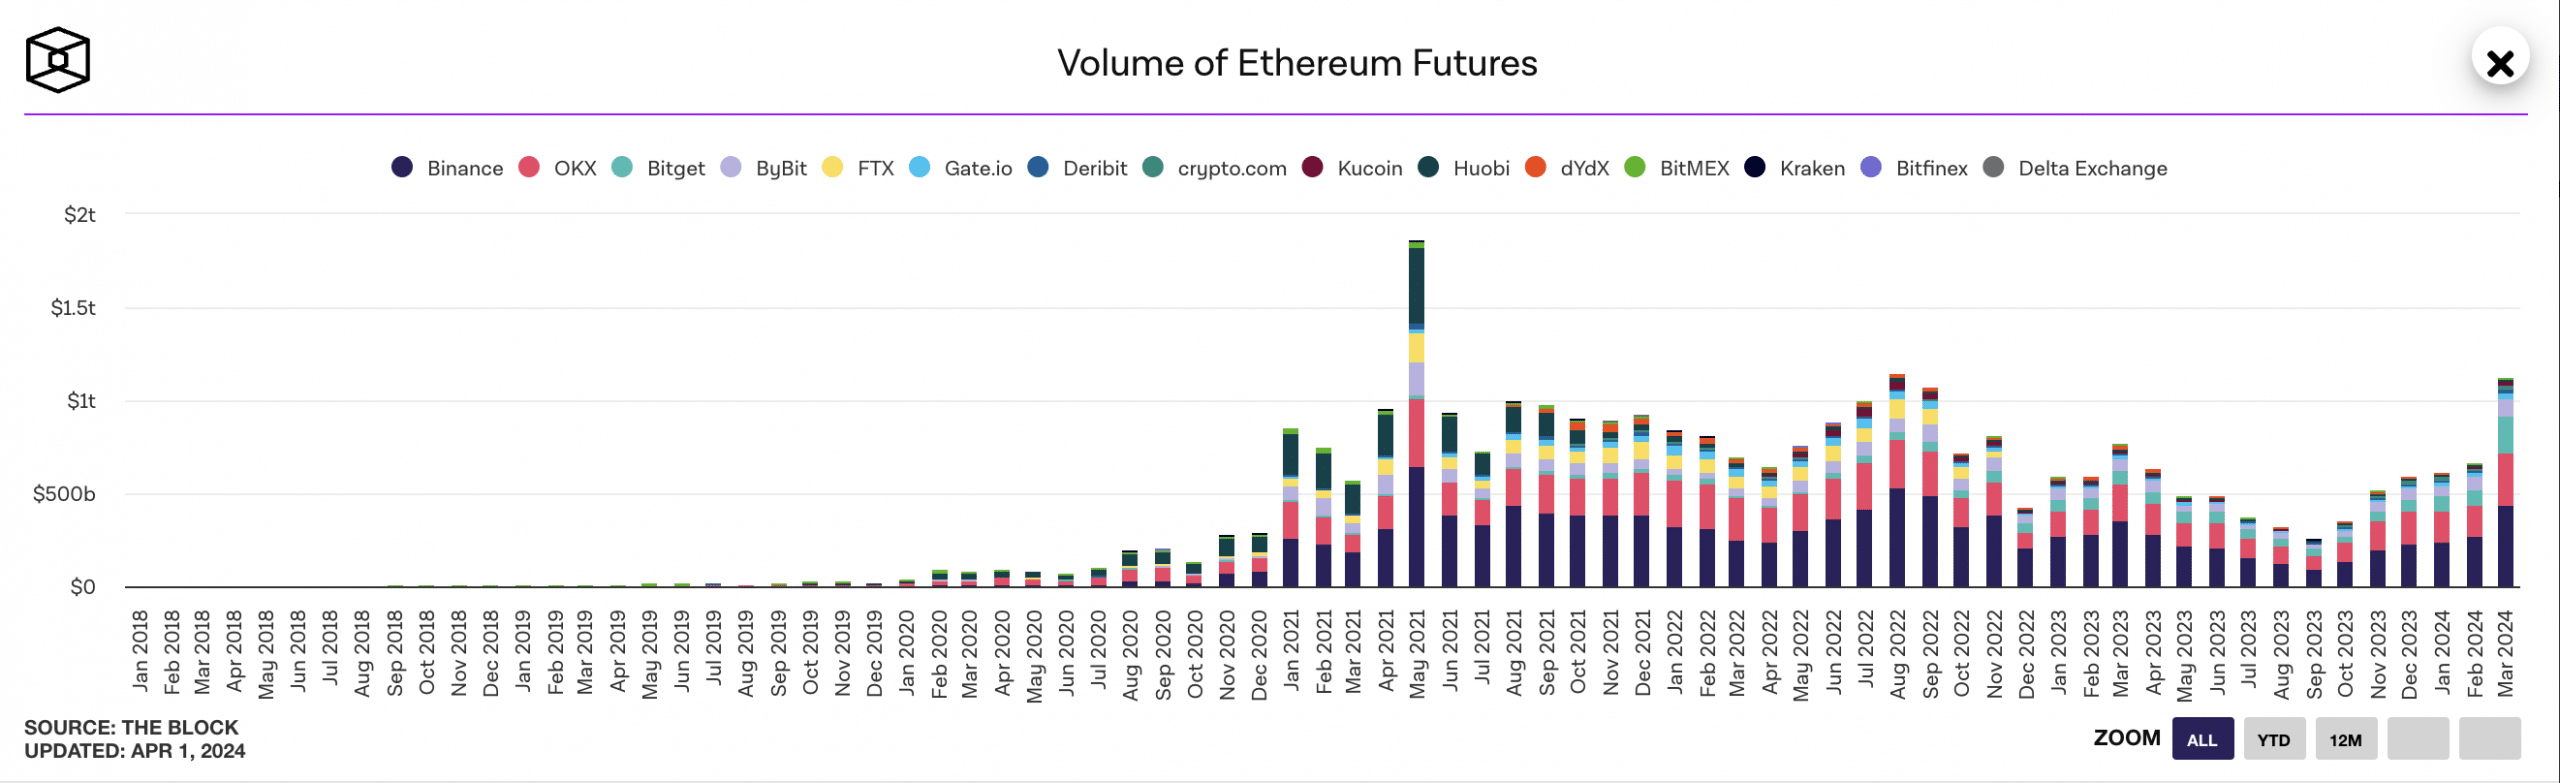 ETH:s månatliga handelsvolym för Futures